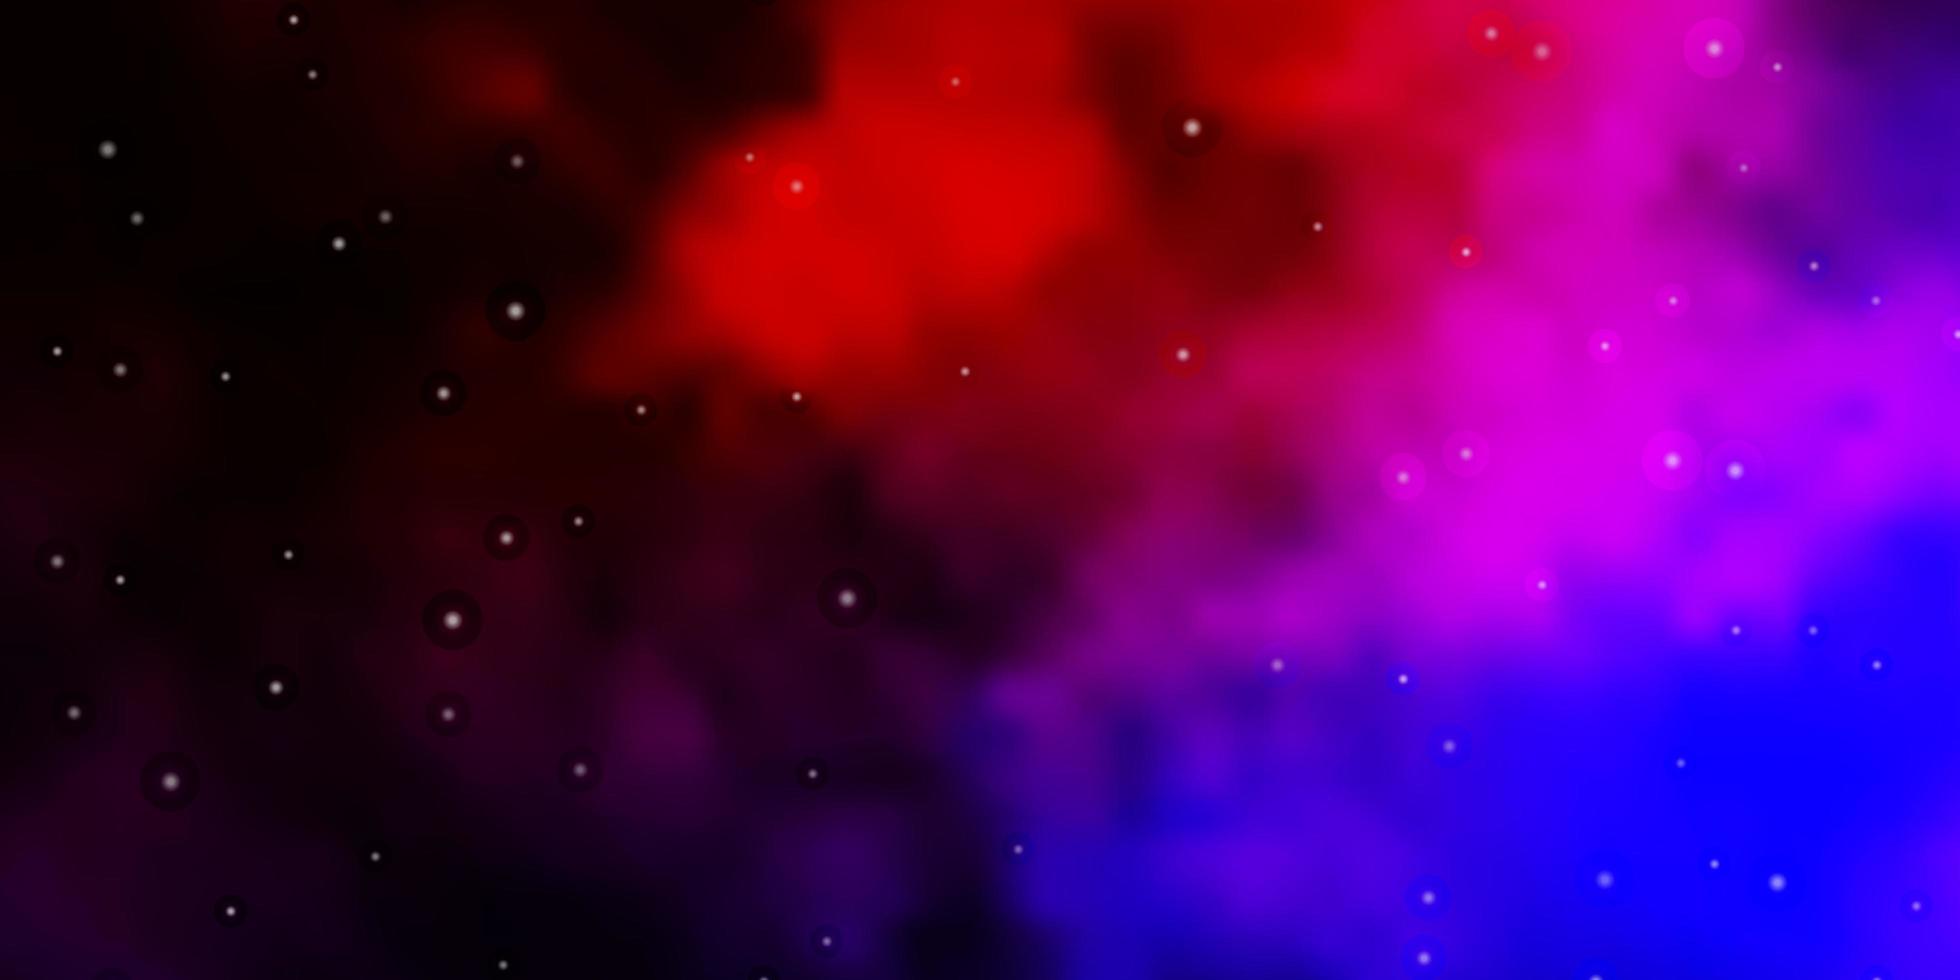 Dunkelrosa-rotes Vektor-Layout mit hellen Sternen bunte Illustration mit abstraktem Farbverlaufsstern-Design für Ihre Geschäftsförderung vektor